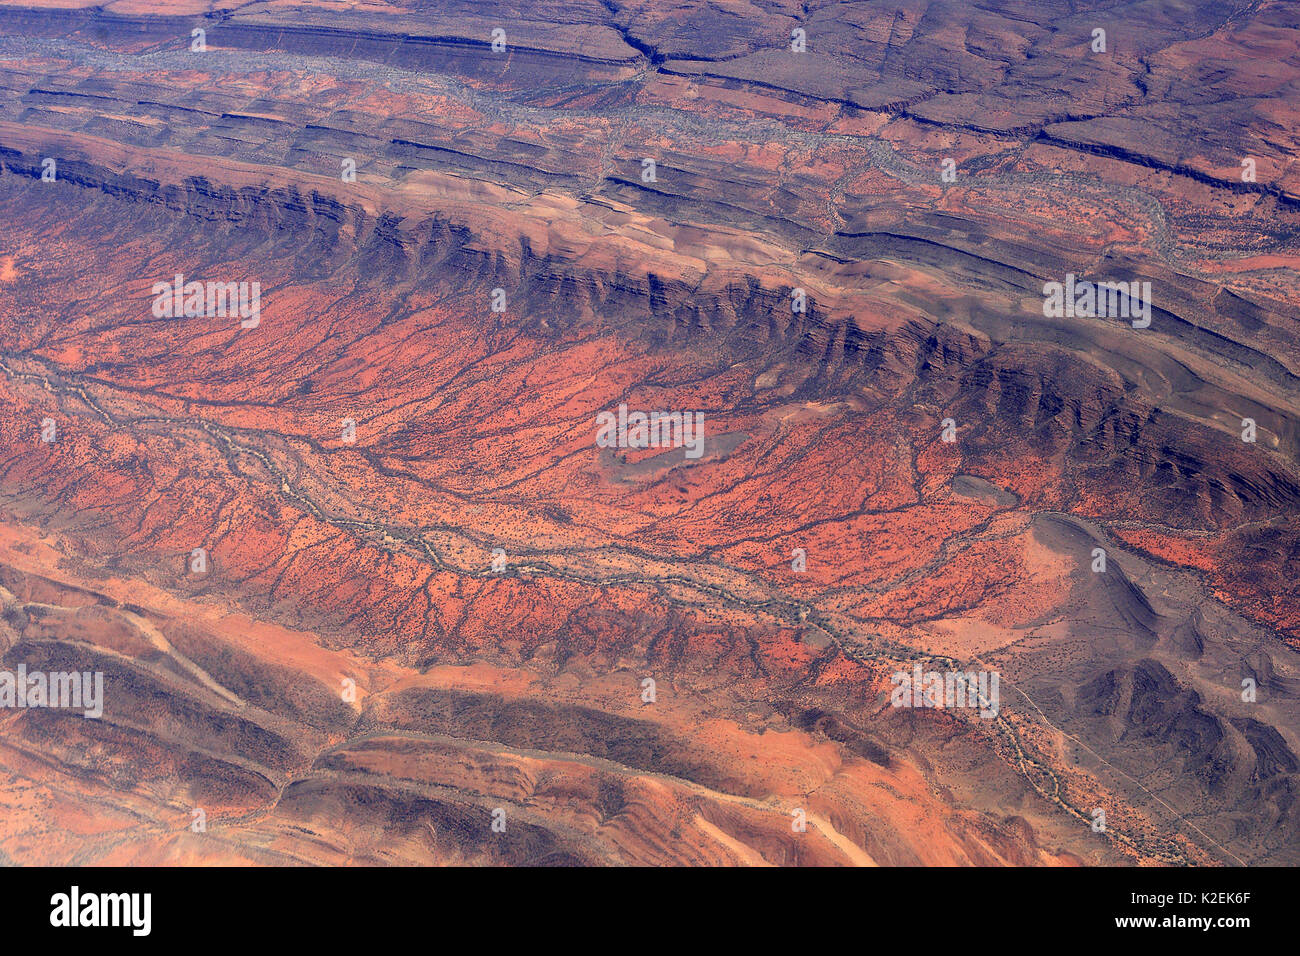 Luftaufnahme des Roten Zentrums in Australien mit einem trockenen Flussbett, Australien, Oktober 2009. Stockfoto